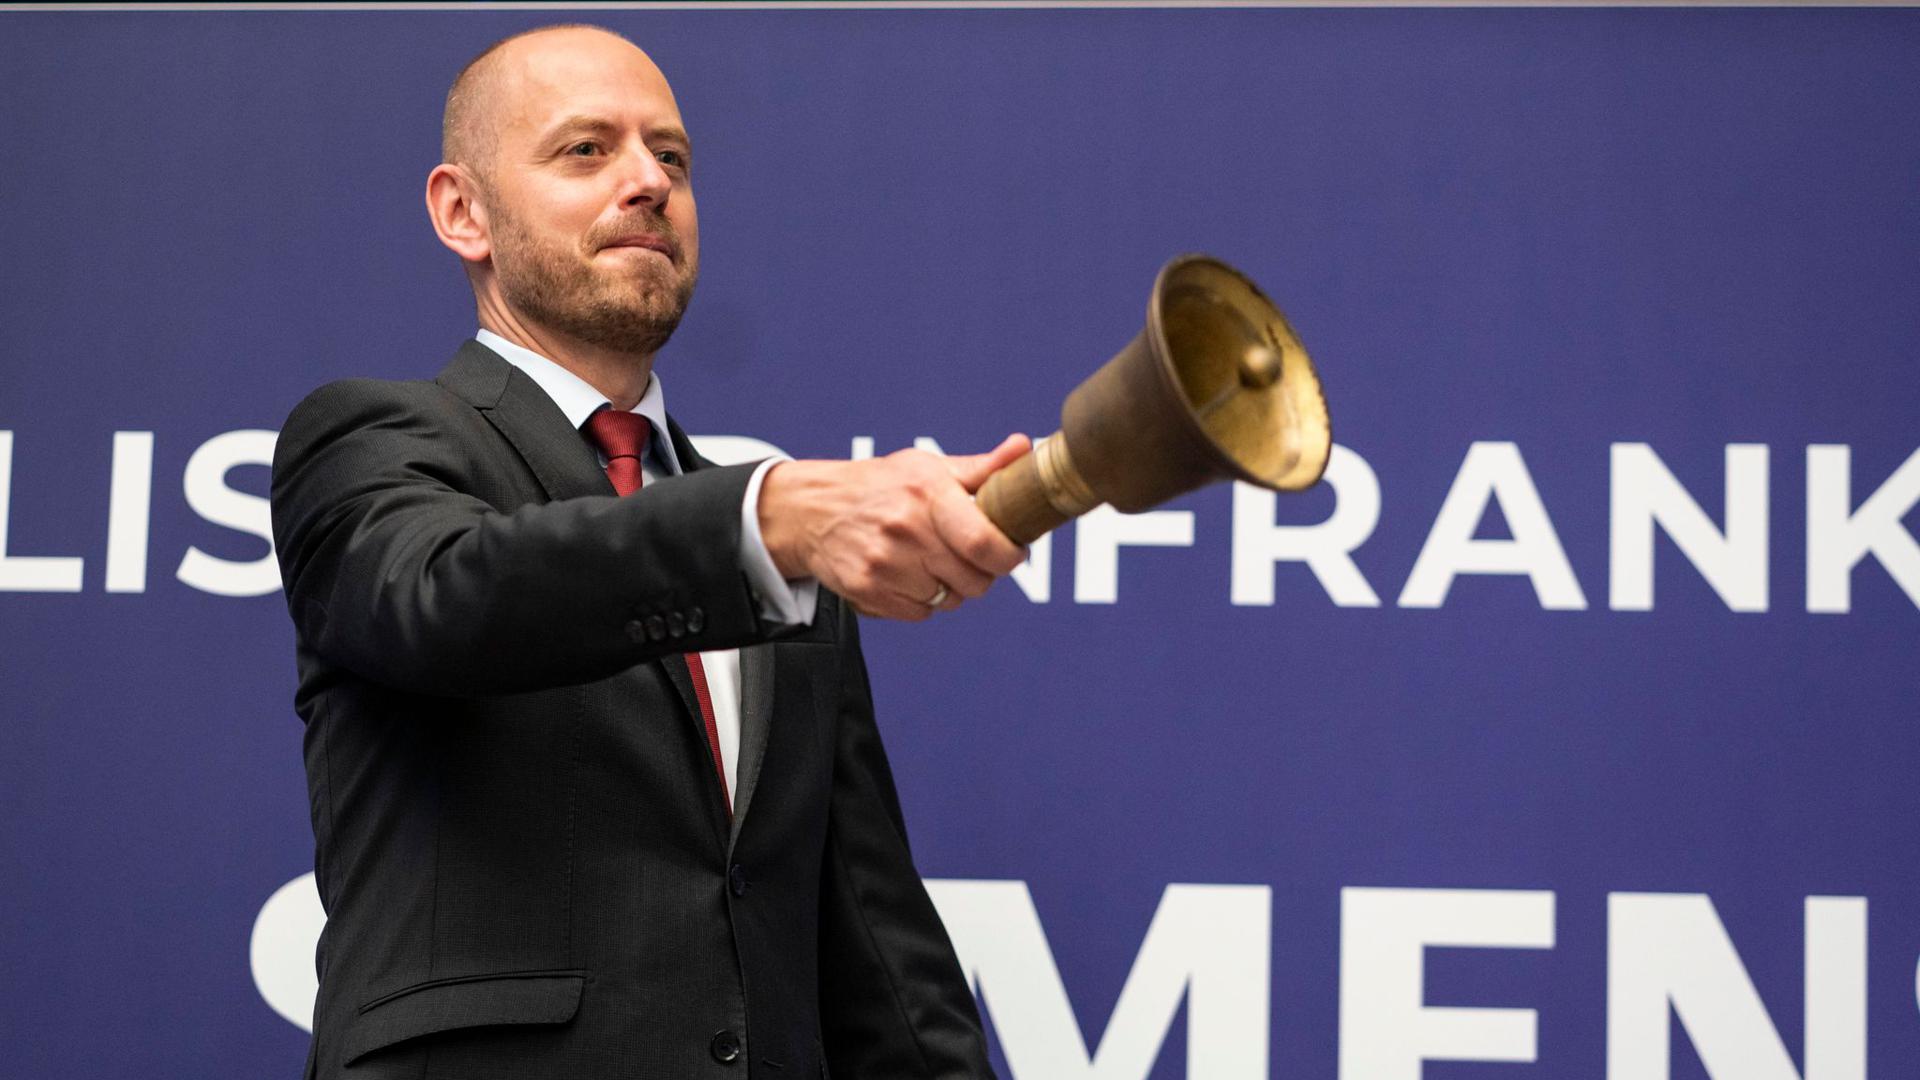 Christian Bruch, der Vorstandsvorsitzende von Siemens Energy, läutet in der Frankfurter Wertpapierbörse traditionell die Glocke nach der Erstnotierung seines Unternehmens.